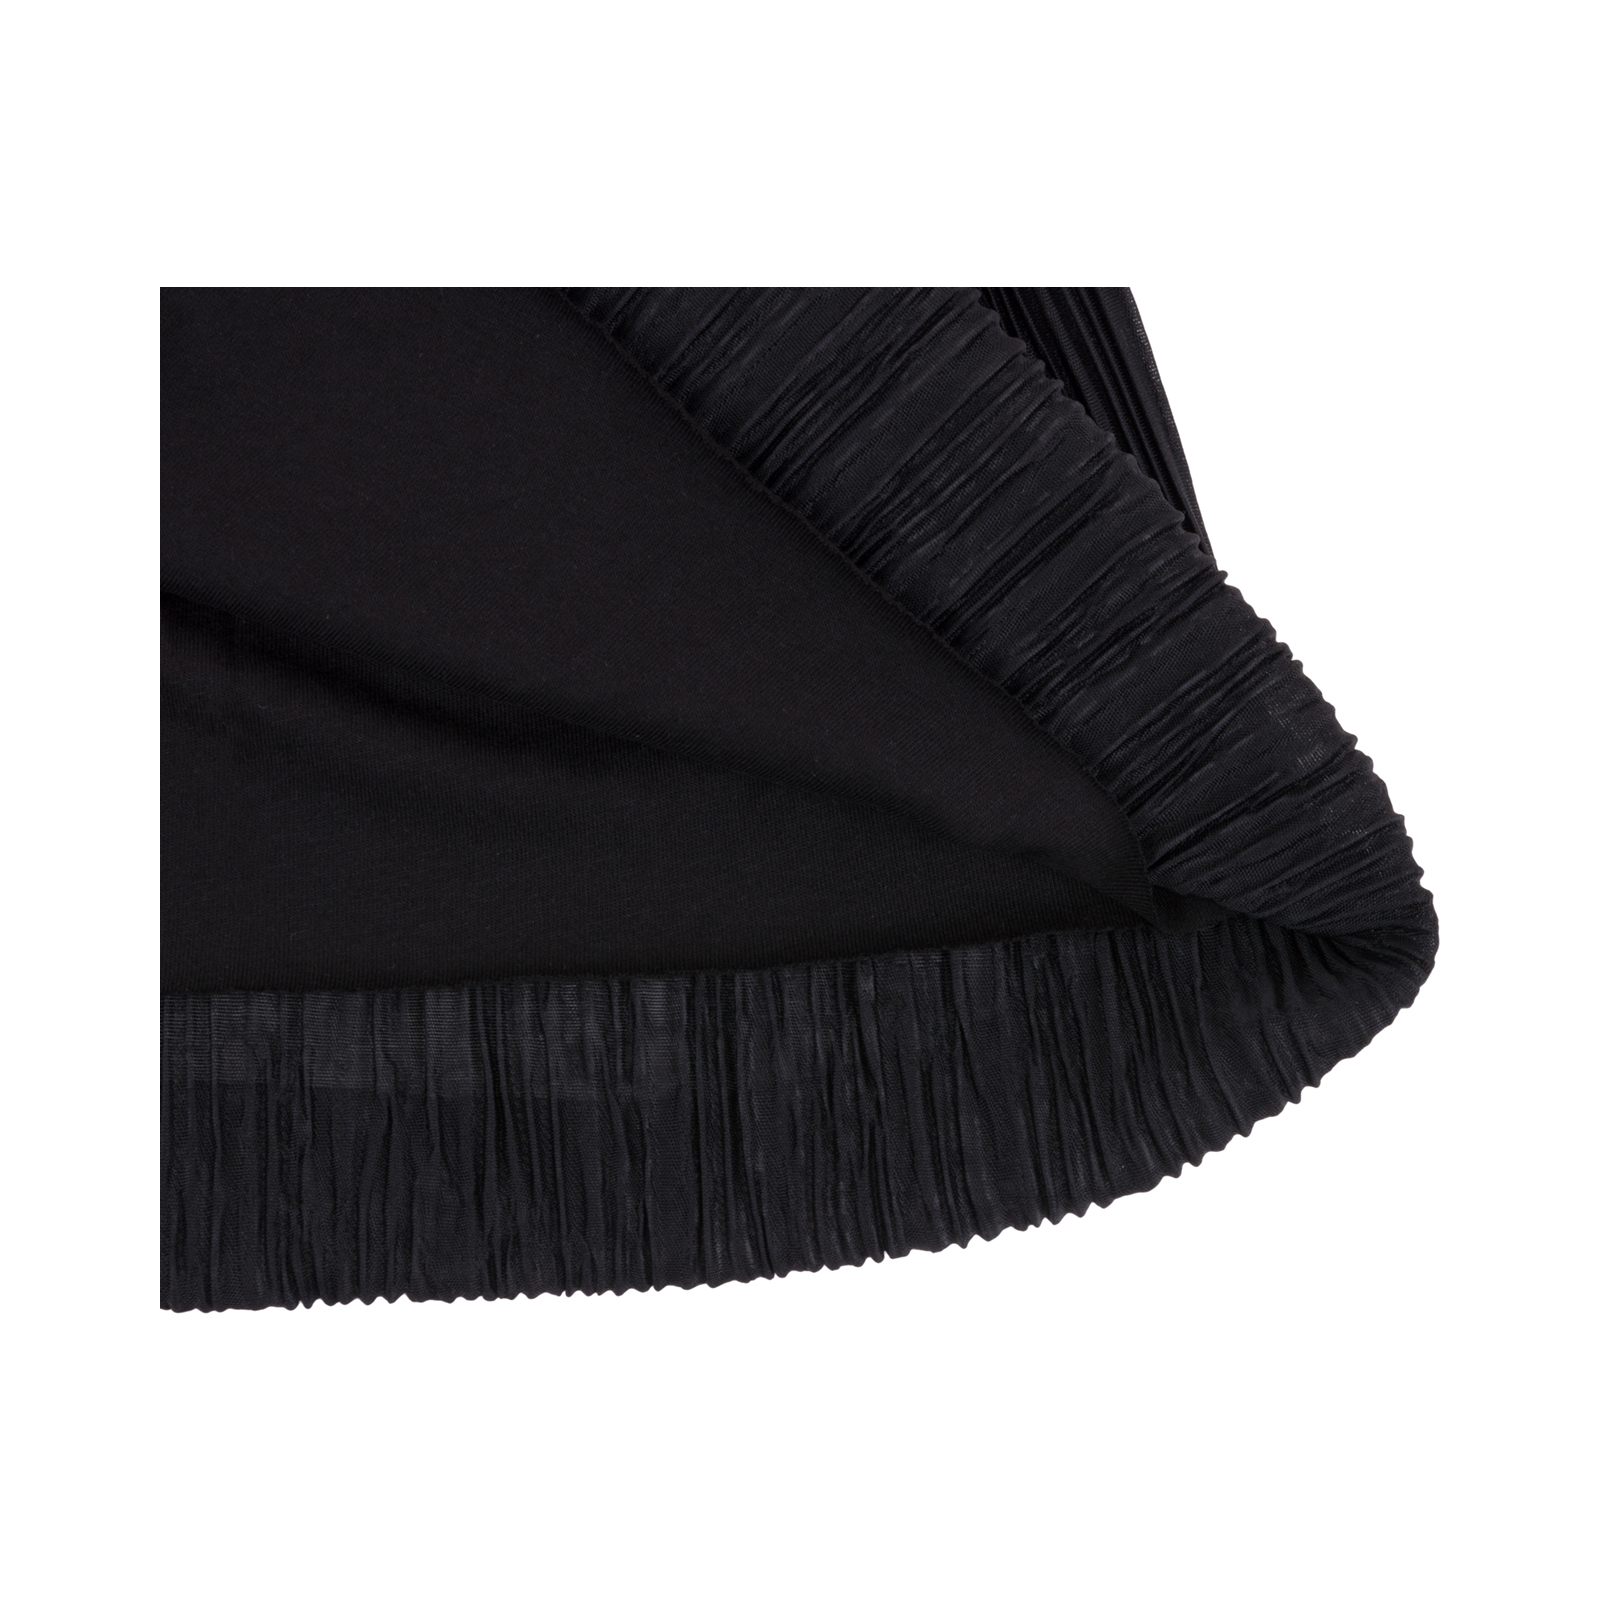 Спідниця Breeze плісе (9832-152G-black) зображення 3